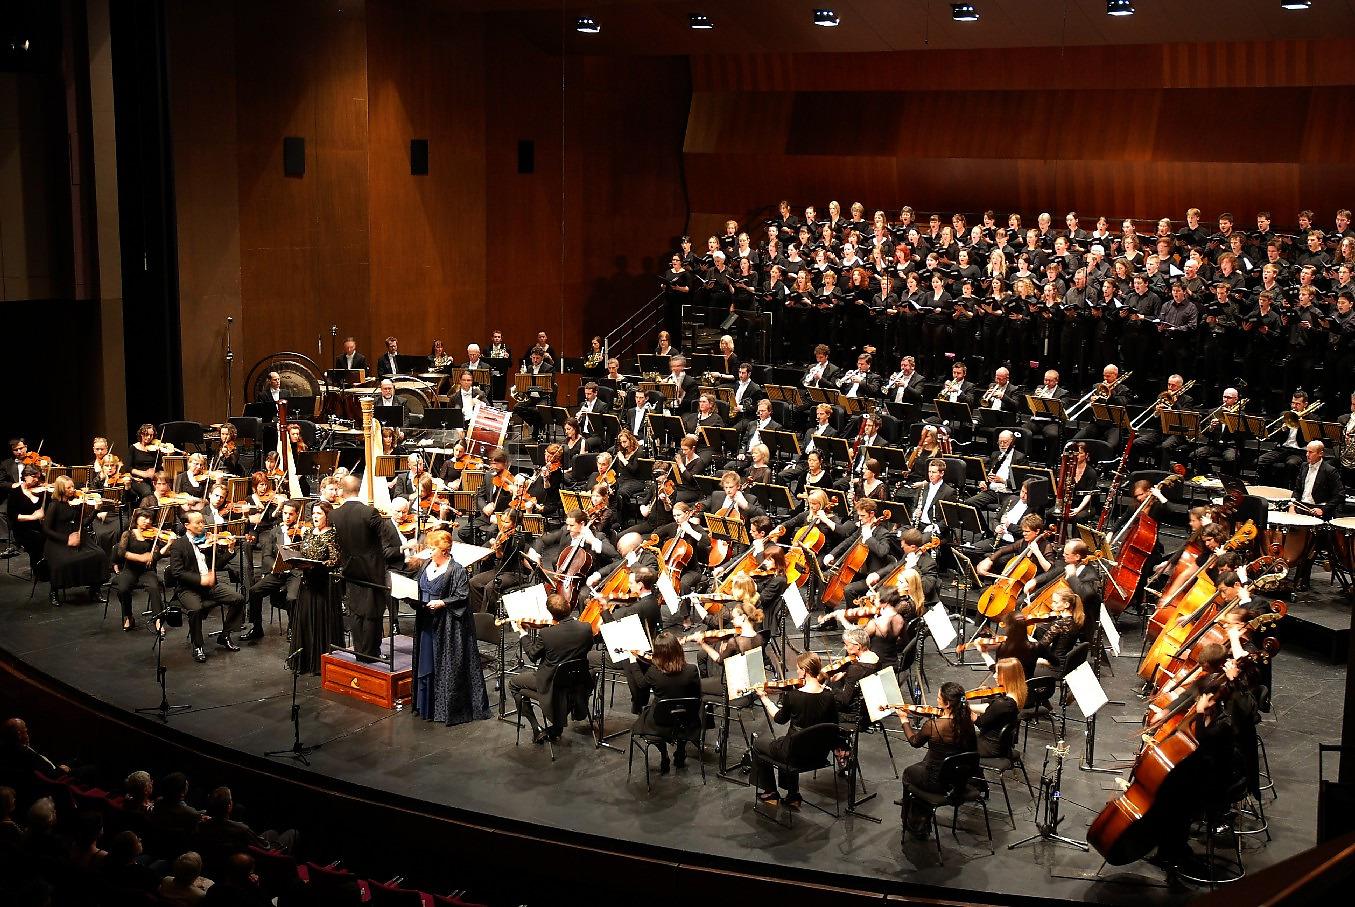 Adelaide Symphony Orchestra все минусовки в mp3